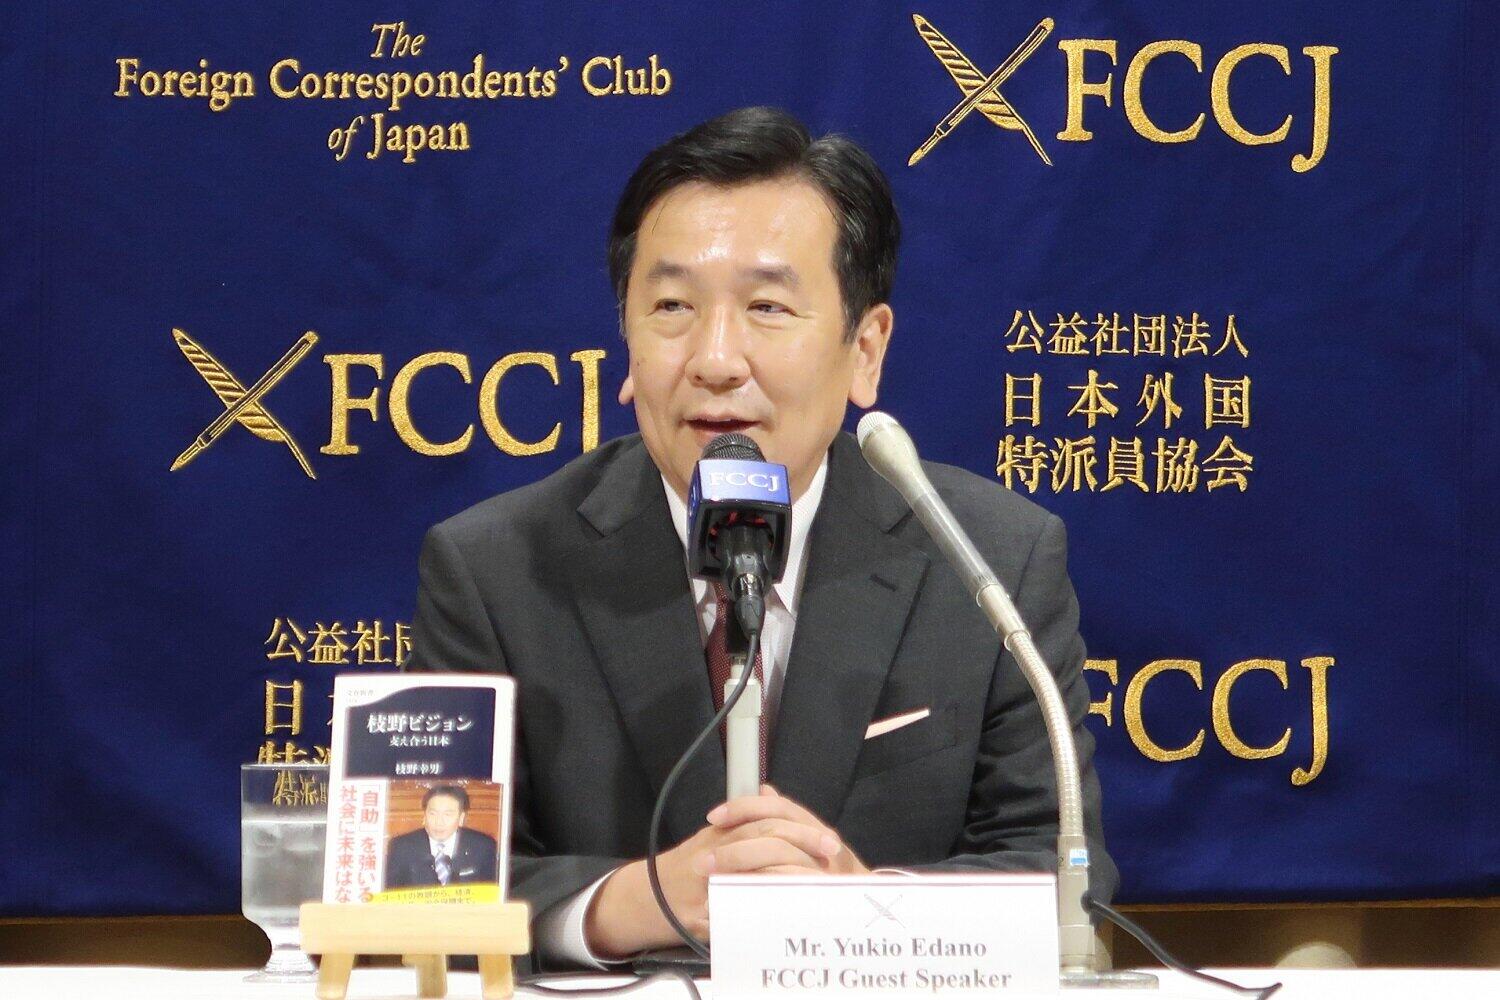 日本外国特派員協会で記者会見する立憲民主党の枝野幸男代表。東京五輪・パラリンピックの1年延期か中止を主張した